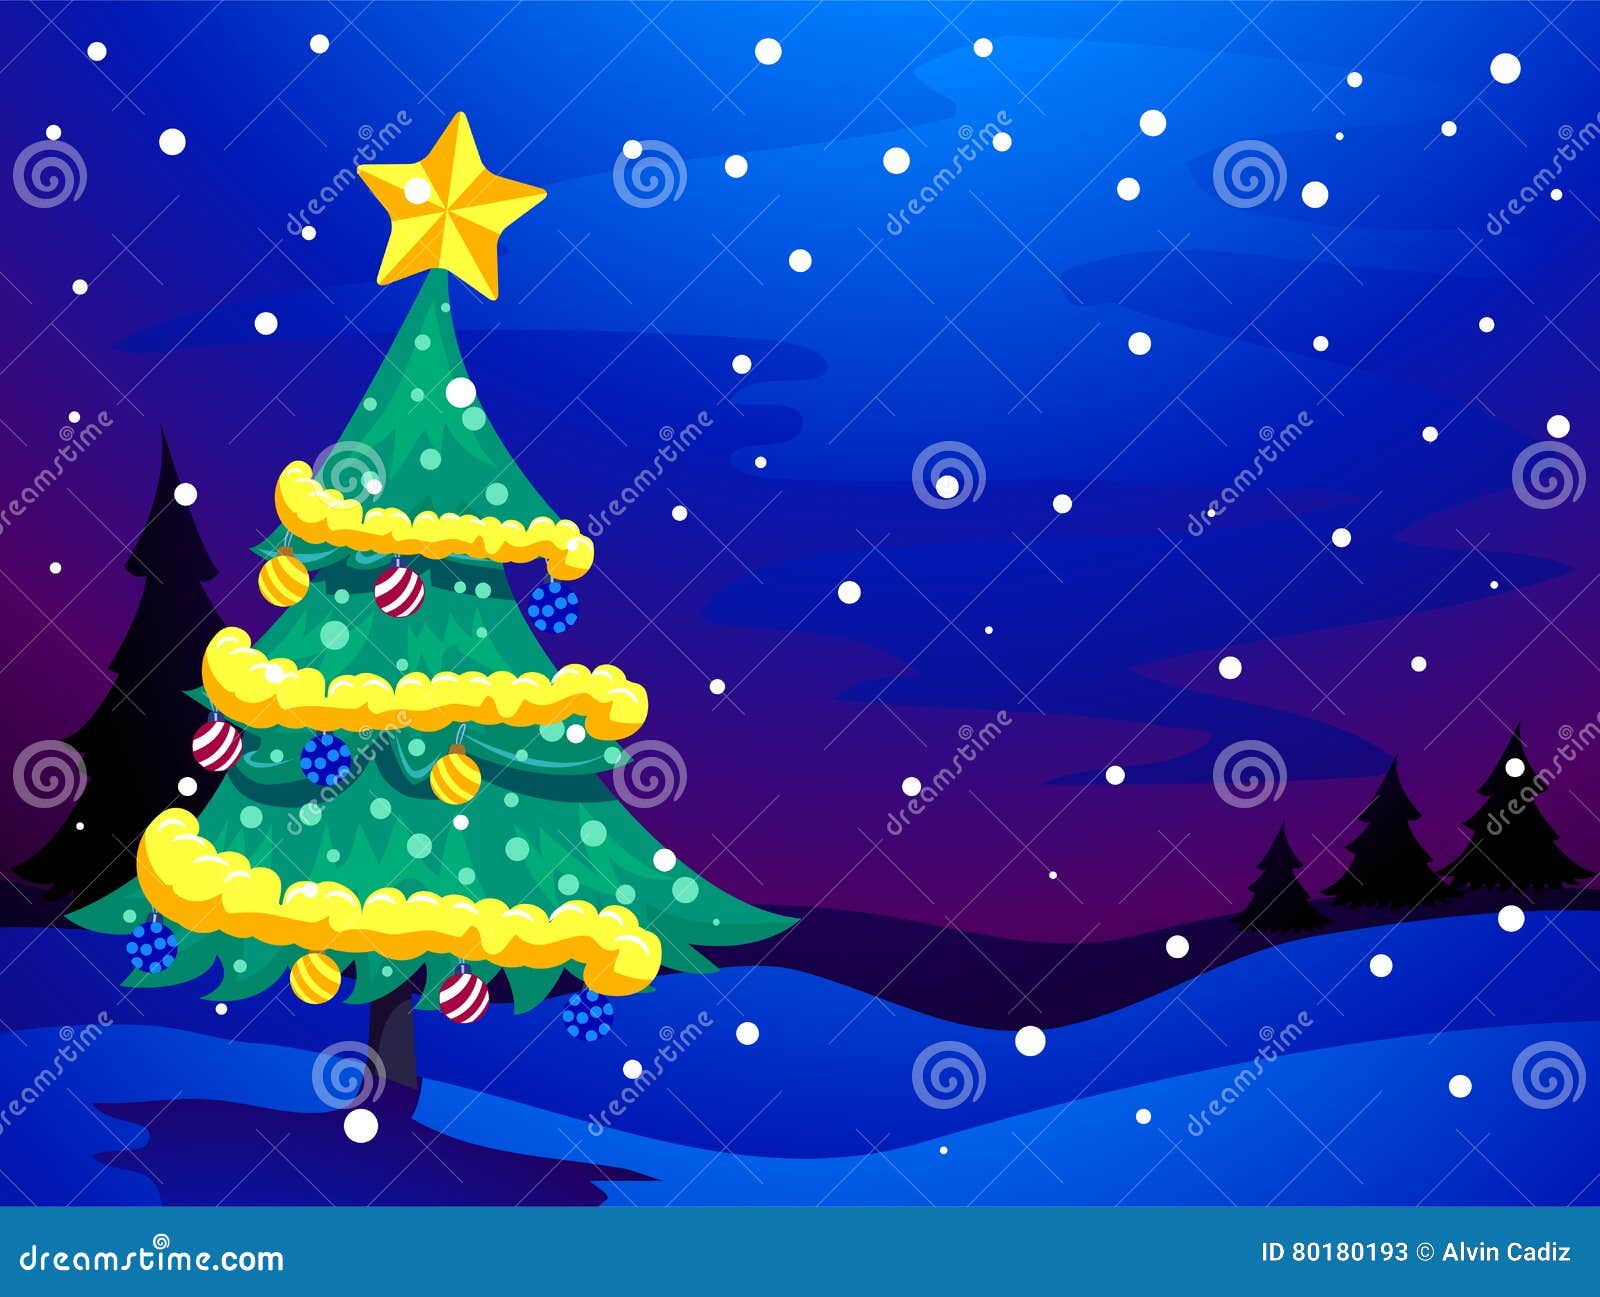 Featured image of post Background Noite De Natal - Buscou lume s.josé pois a noite estava fria e ficou ao desamparo sozinha a virgem maria.